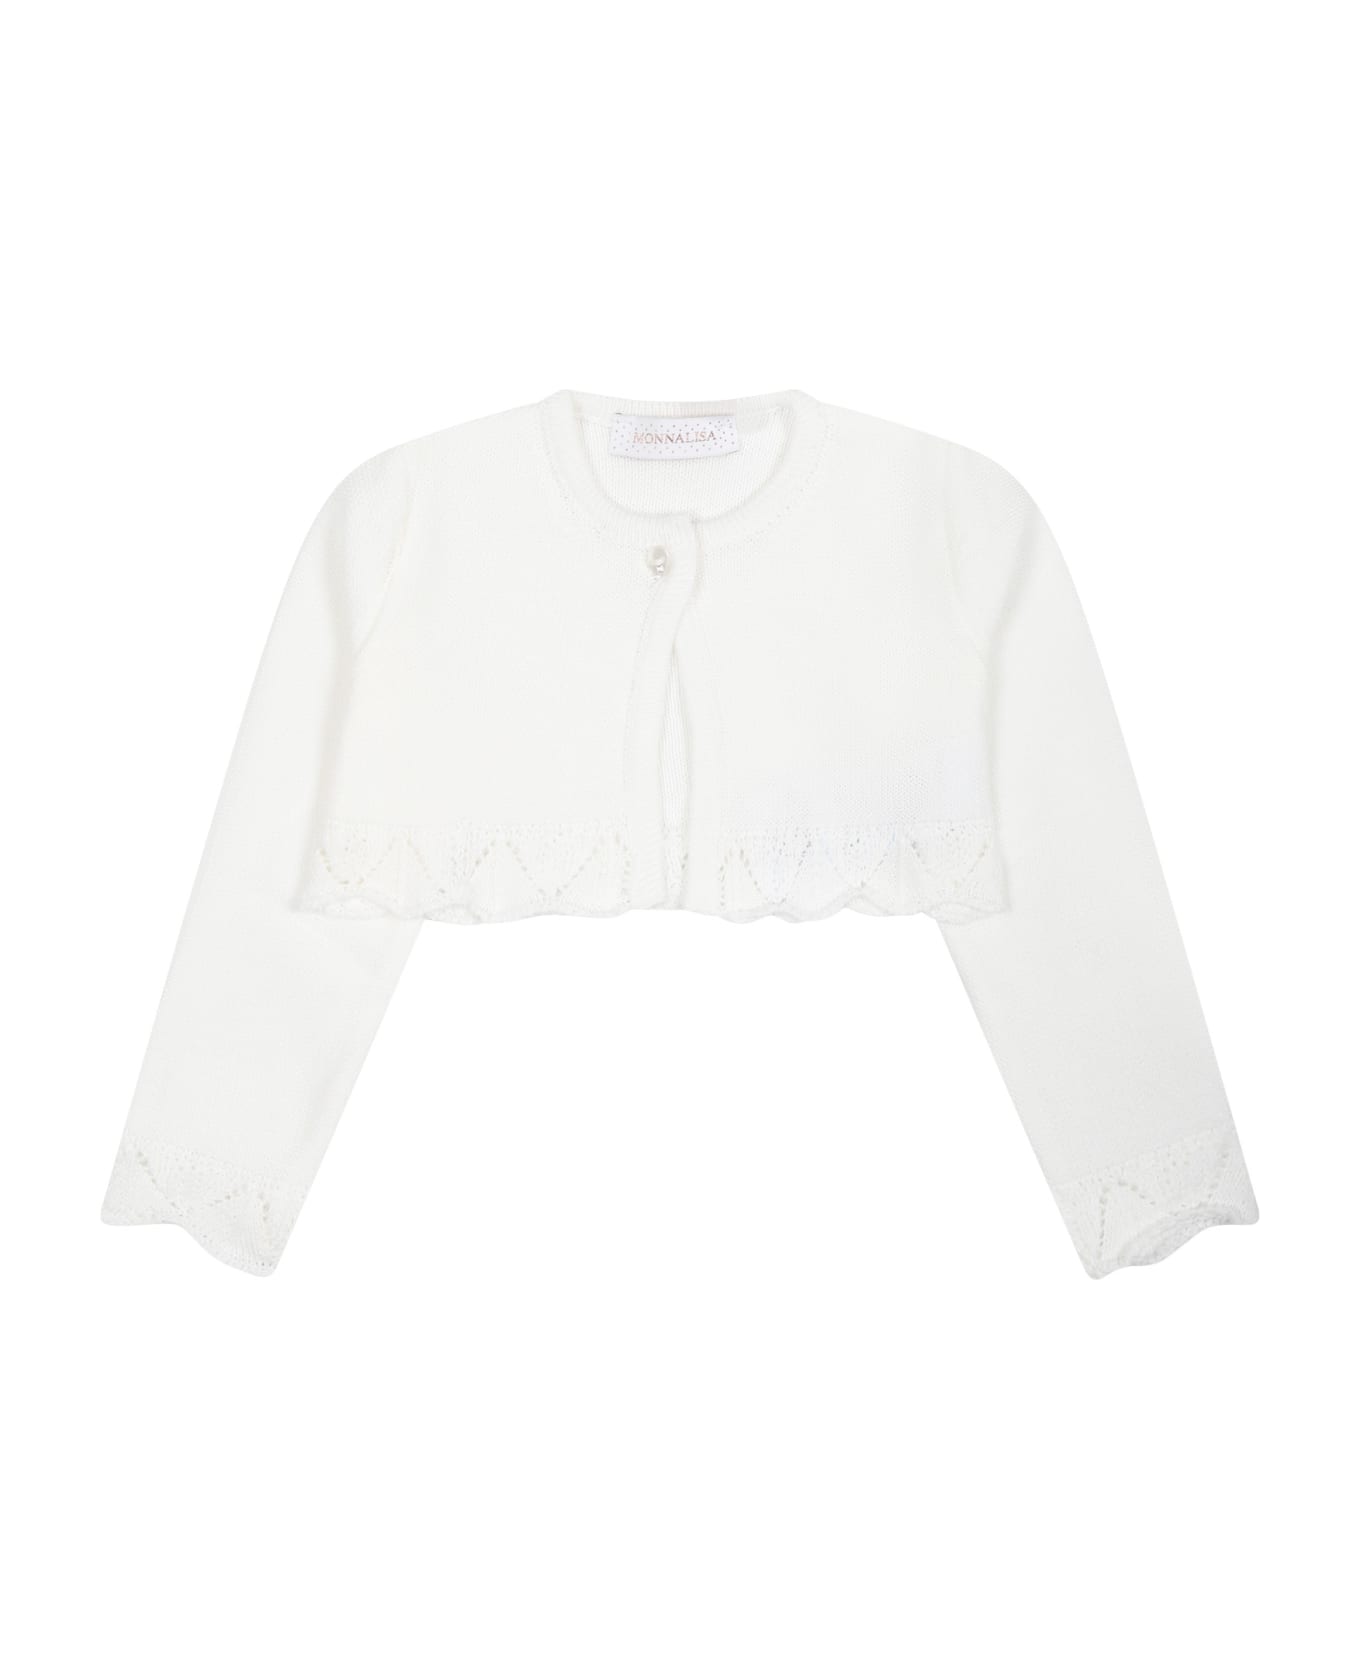 Monnalisa White Cardigan For Baby Girl With Ruffles - White ニットウェア＆スウェットシャツ